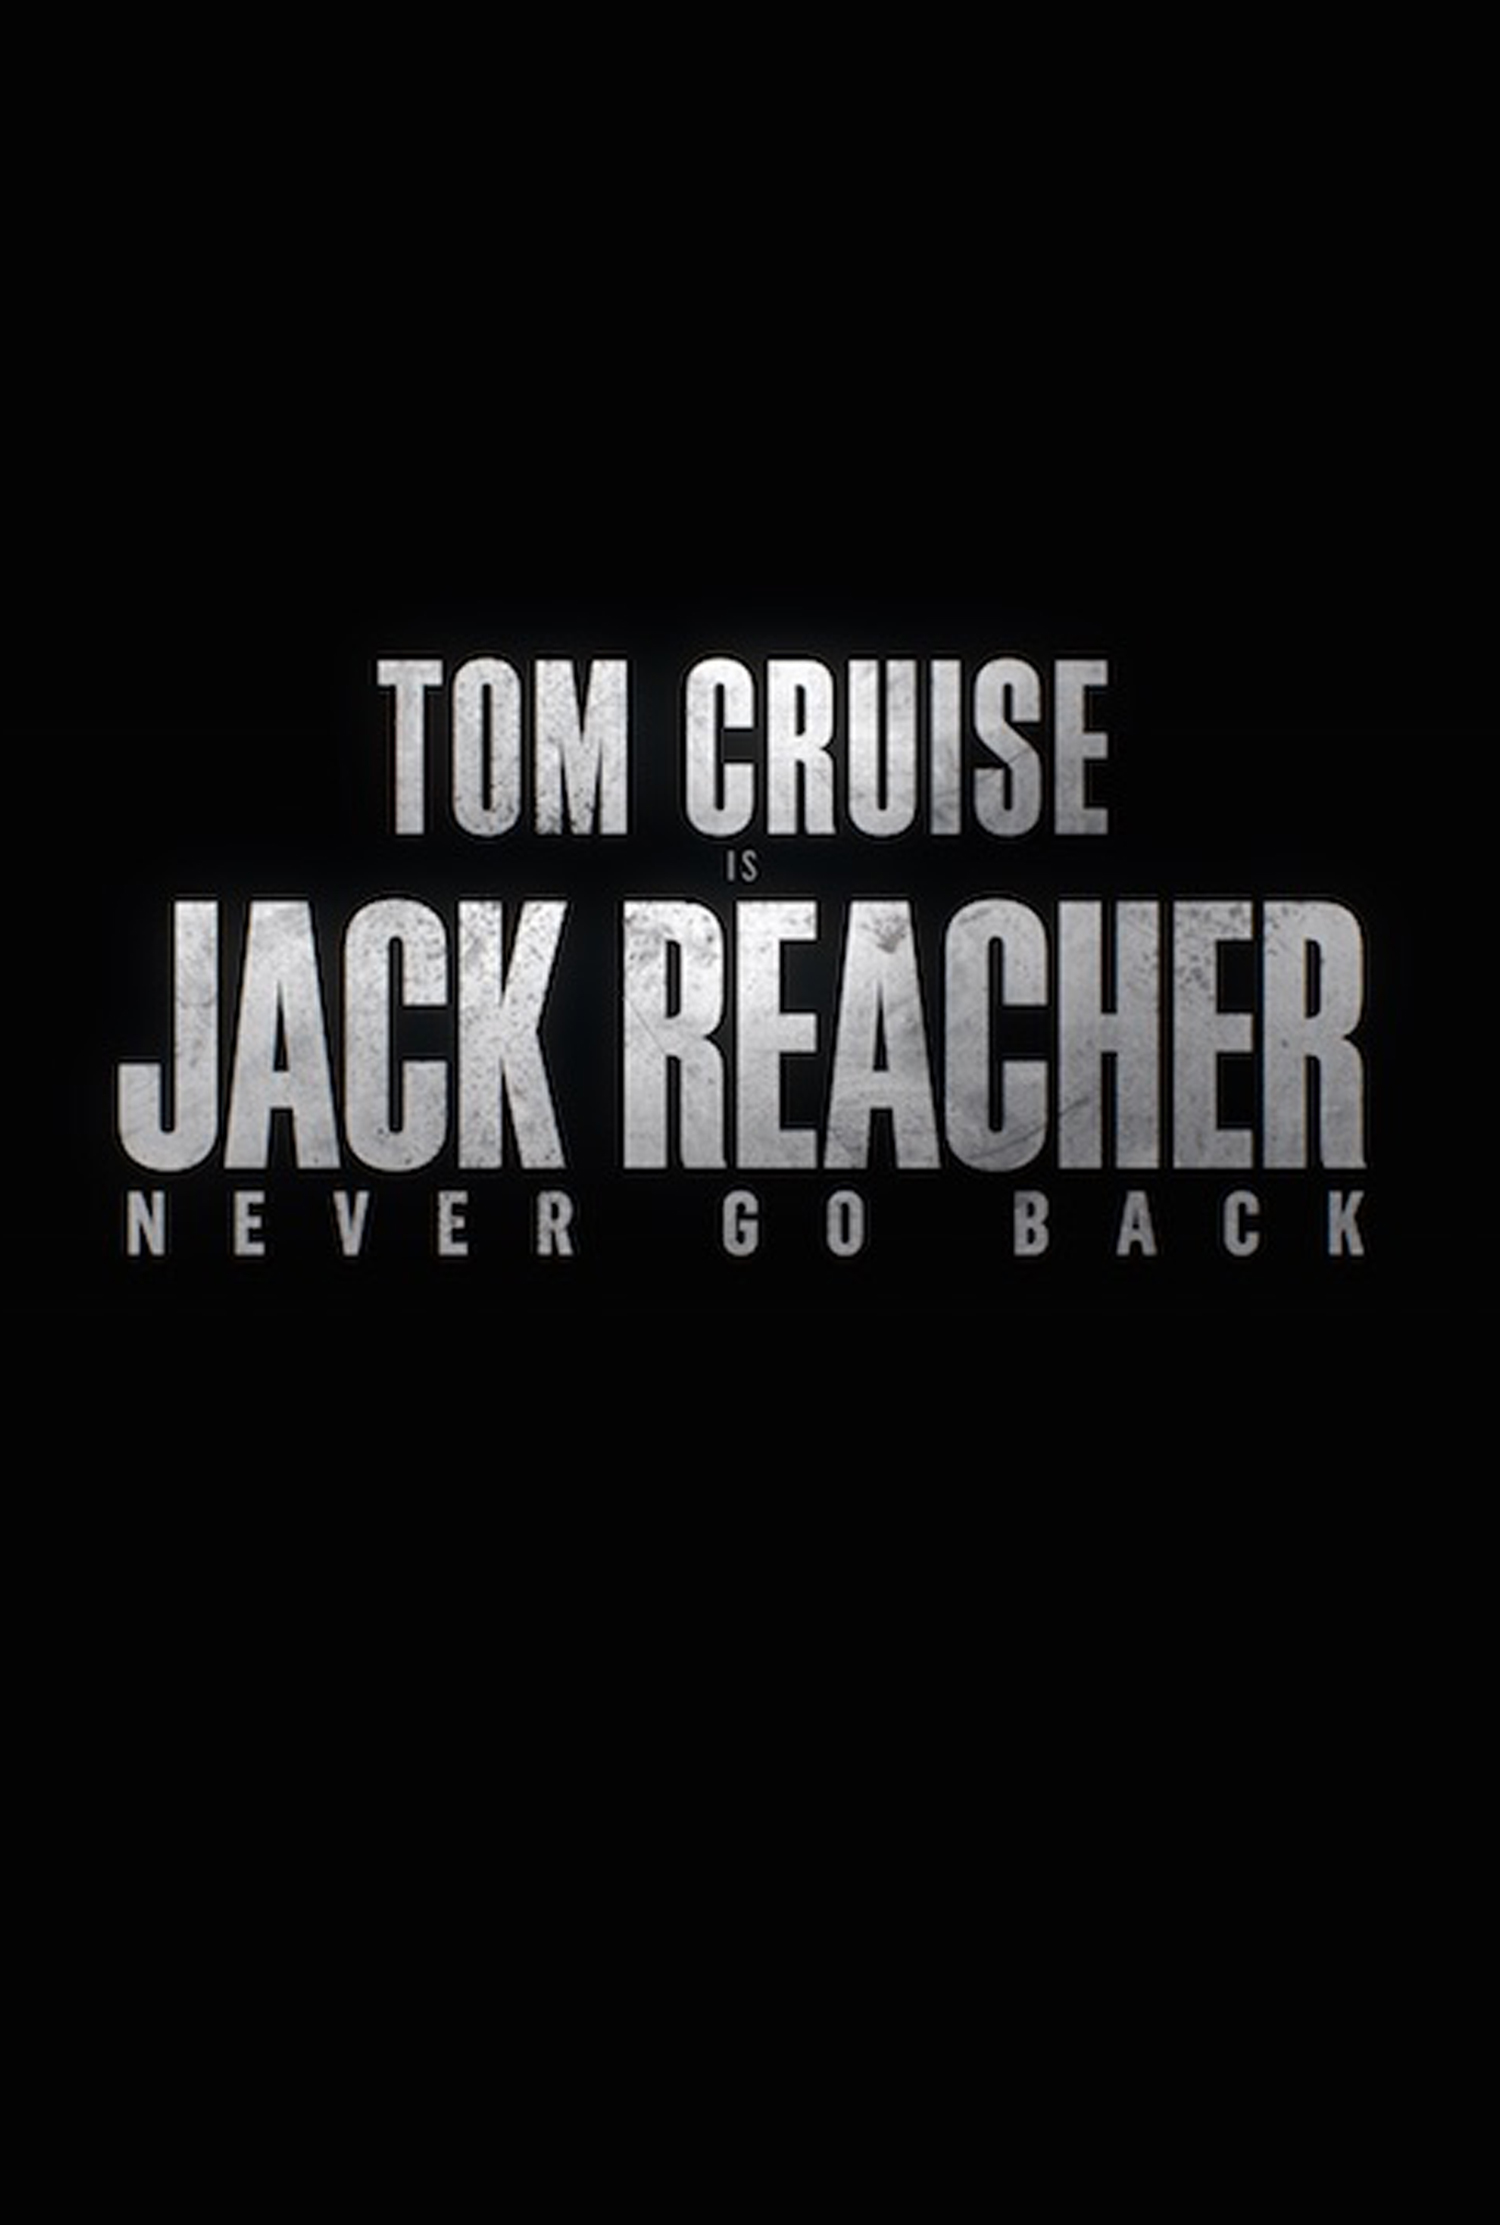 Watch Film Jack Reacher: Never Go Back Online 2016 Full-Length